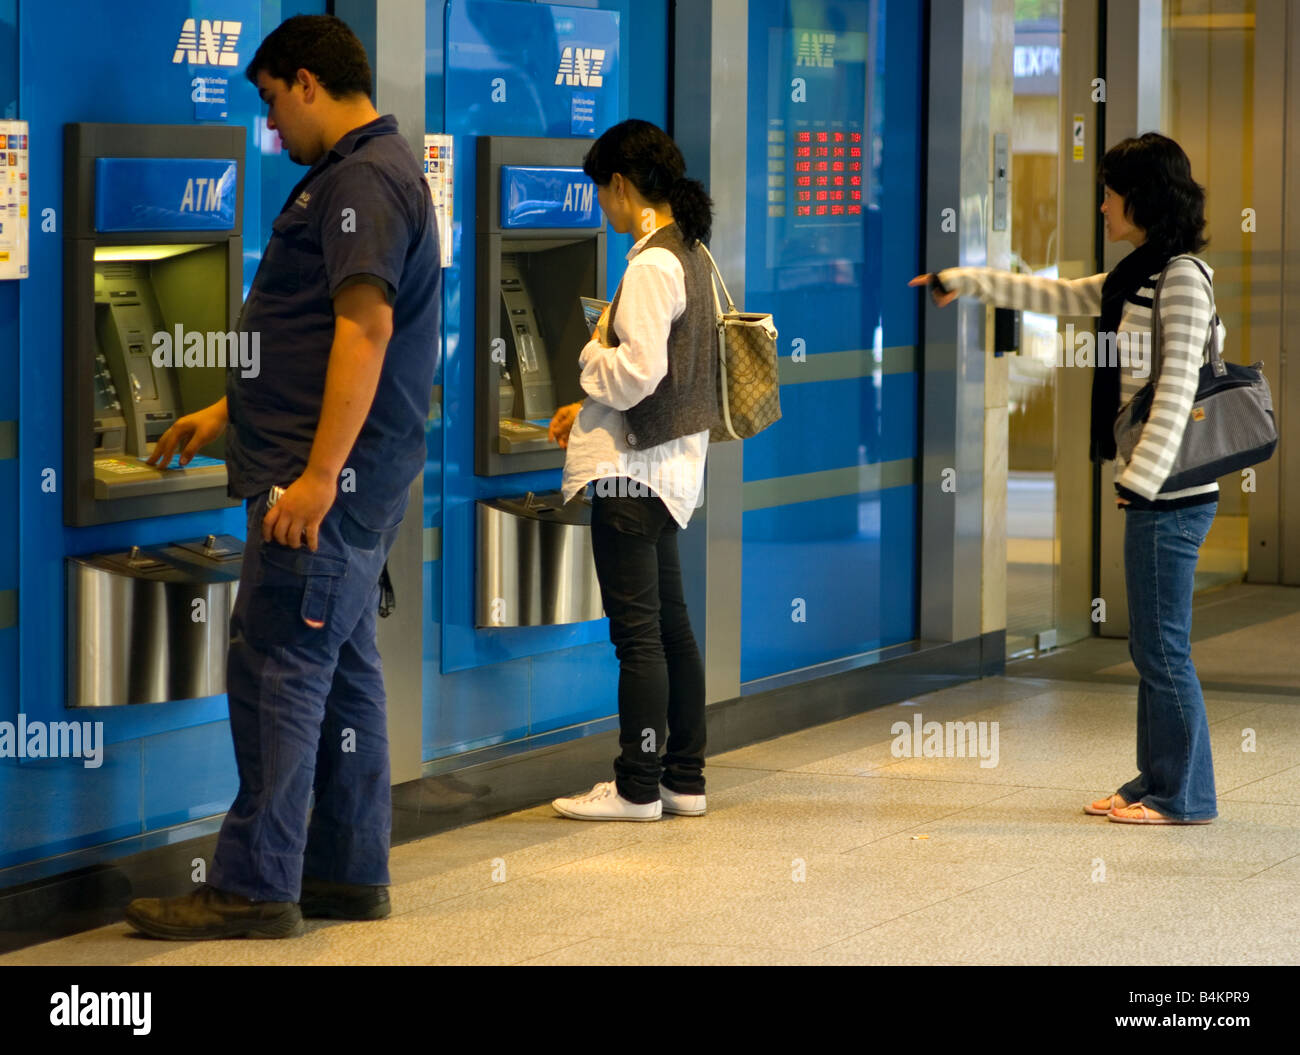 Menschen am Geldautomaten Geld abheben. Stockfoto